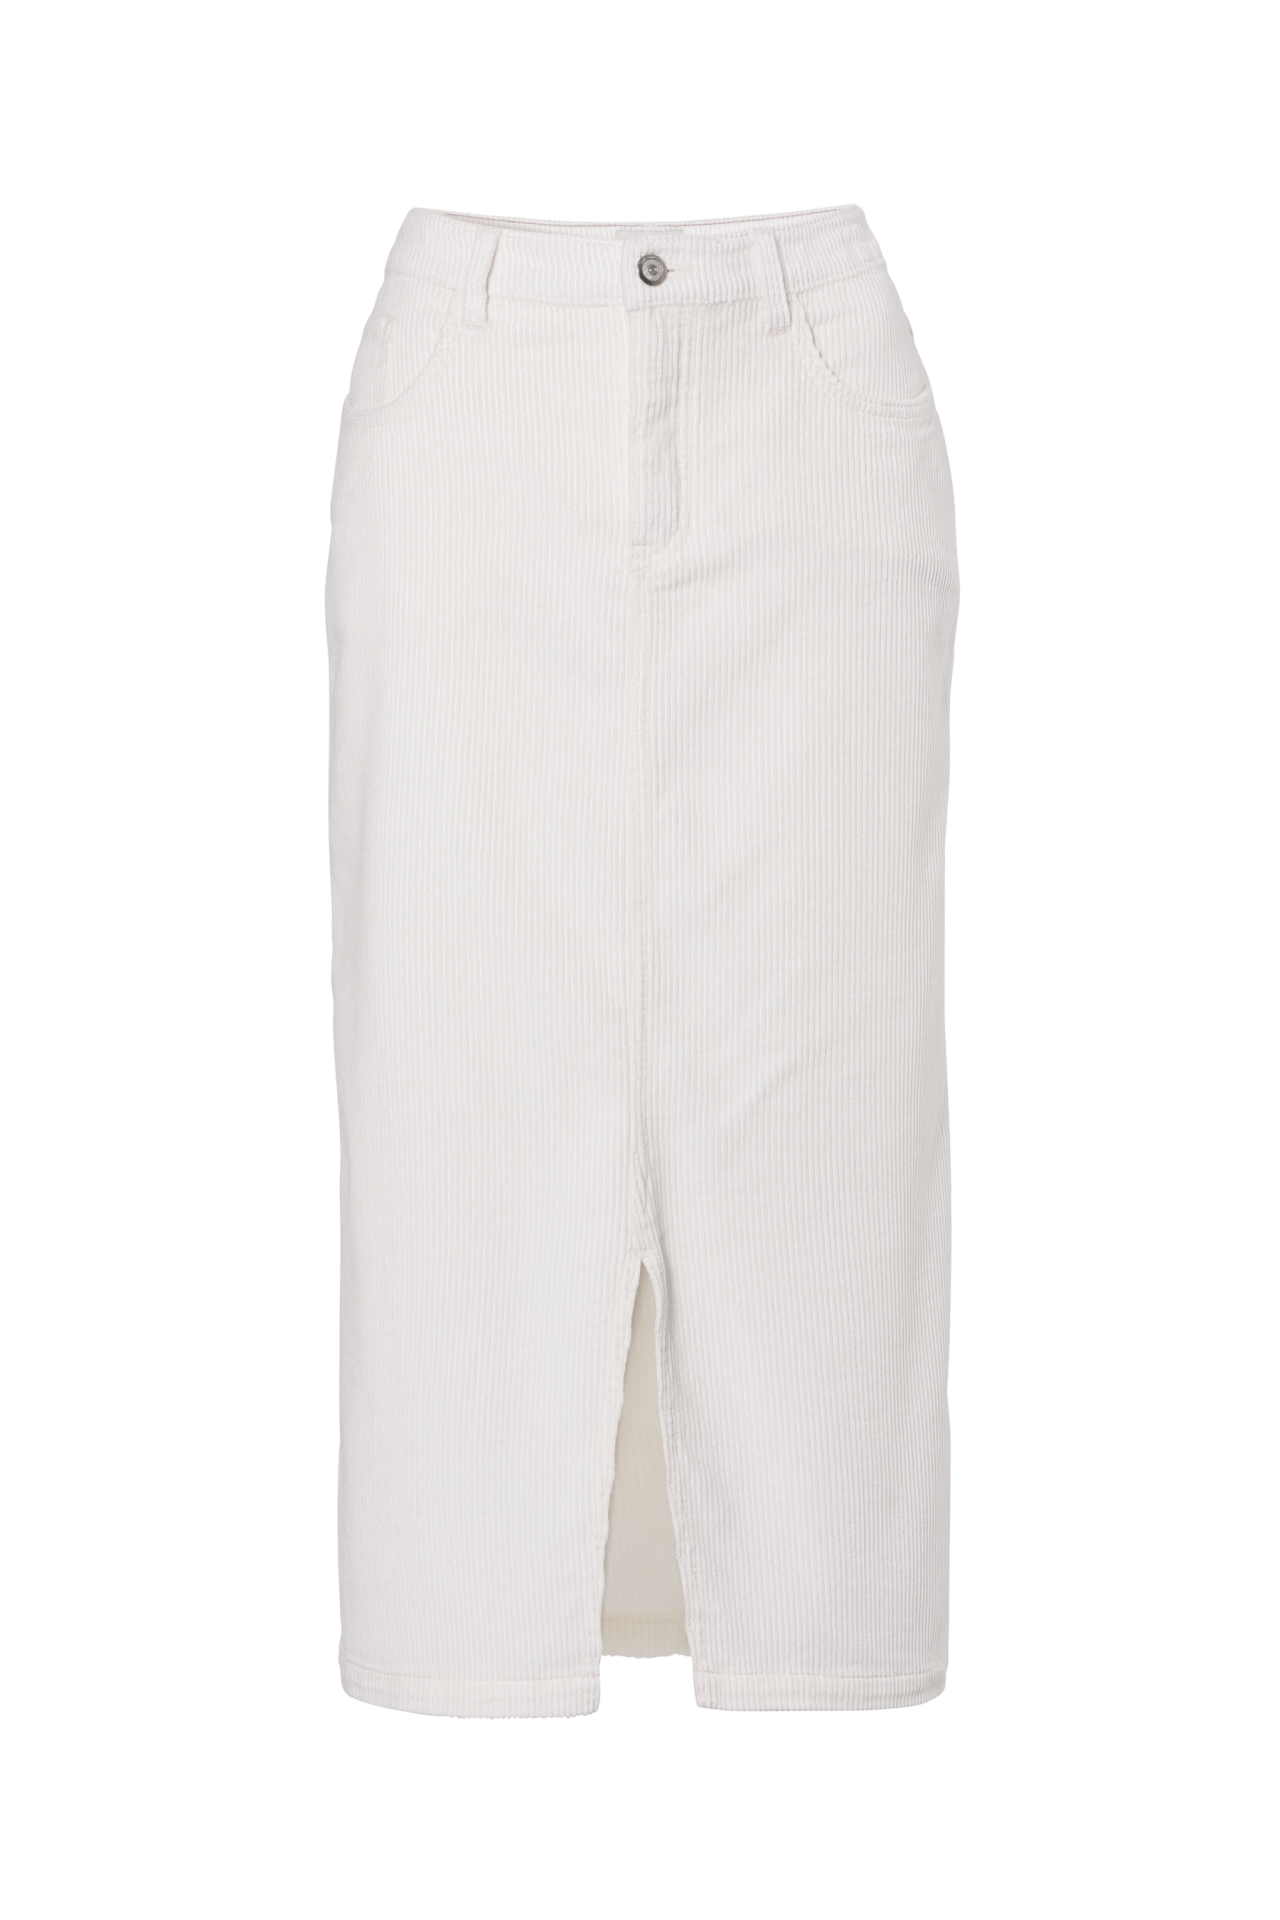 Witte fluwelen rok (29,99 euro), van C&A.